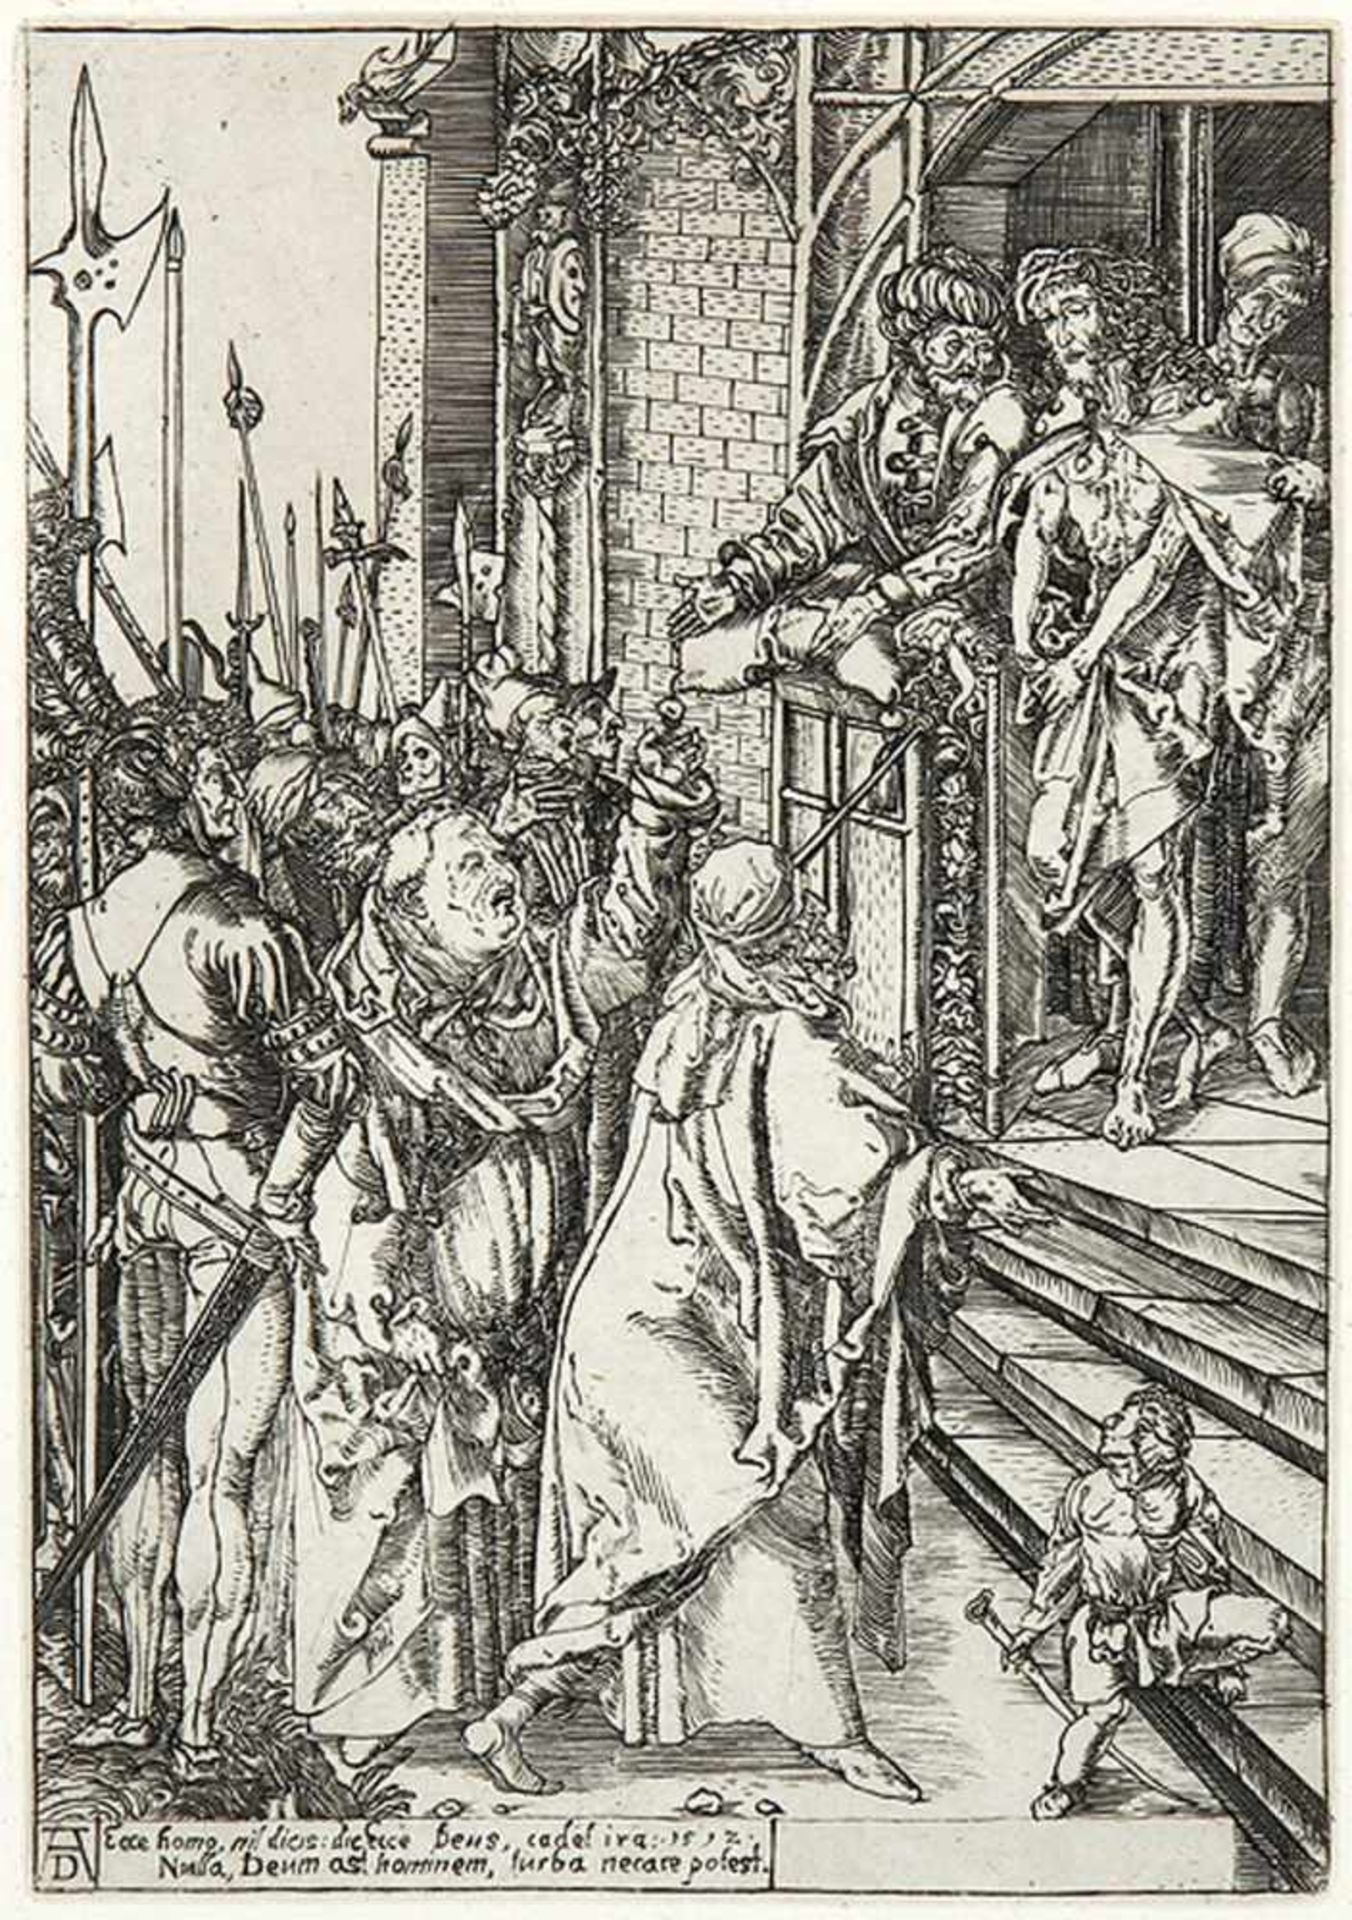 DÜRER - KopienSchaustellung Christi. Seitenverkehrte Kopie nach Dürers Holzschnitt von 1497-1500 aus